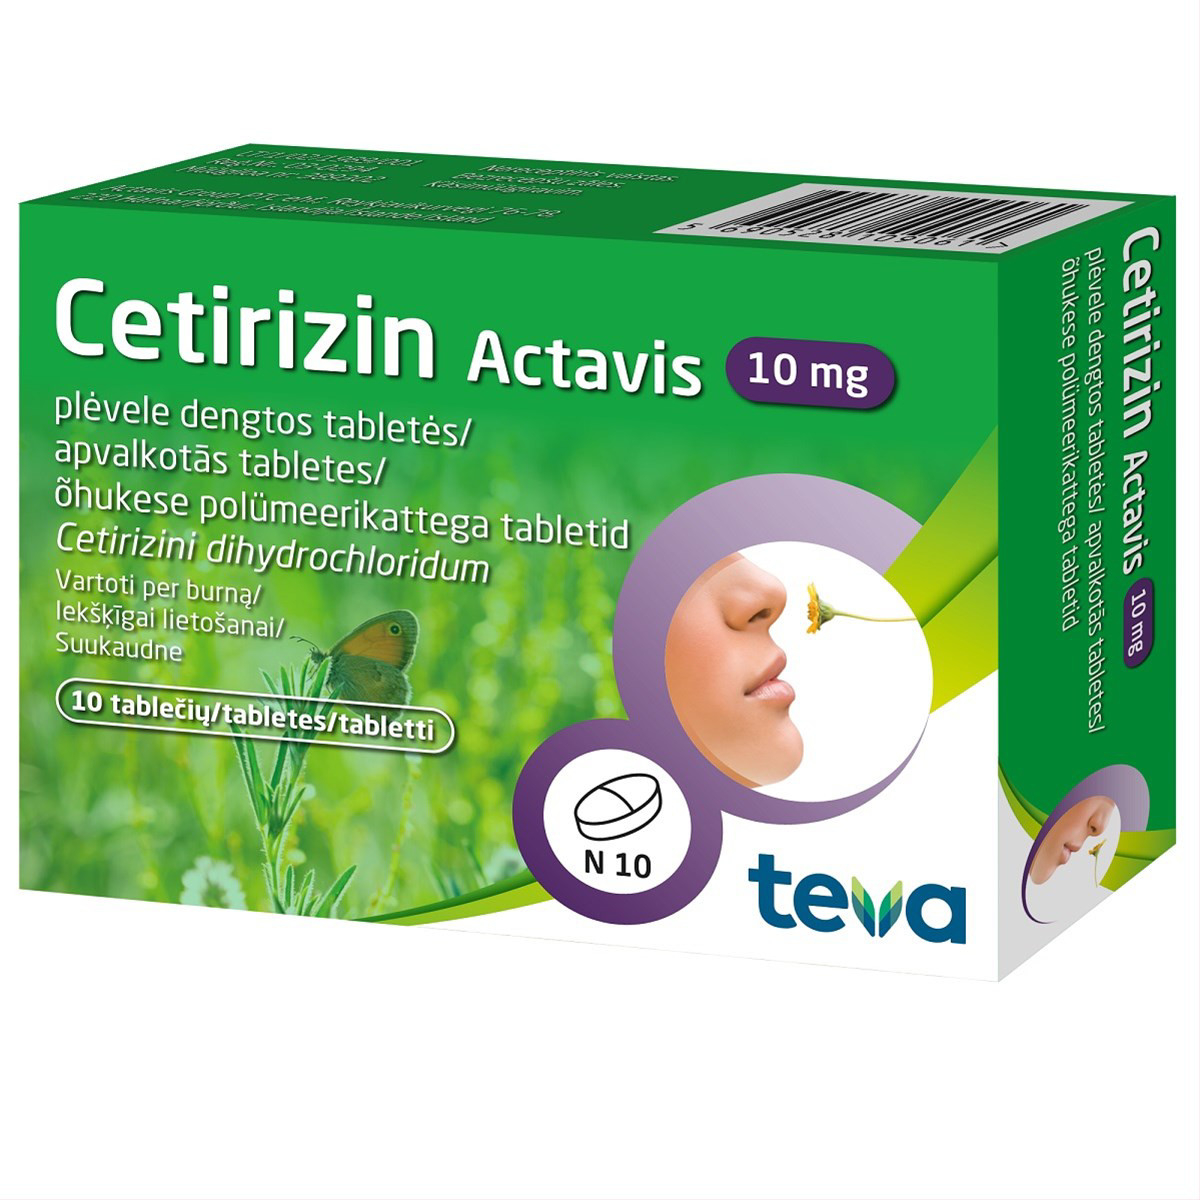 CETIRIZIN ACTAVIS, 10 mg, plėvele dengtos tabletės, N10